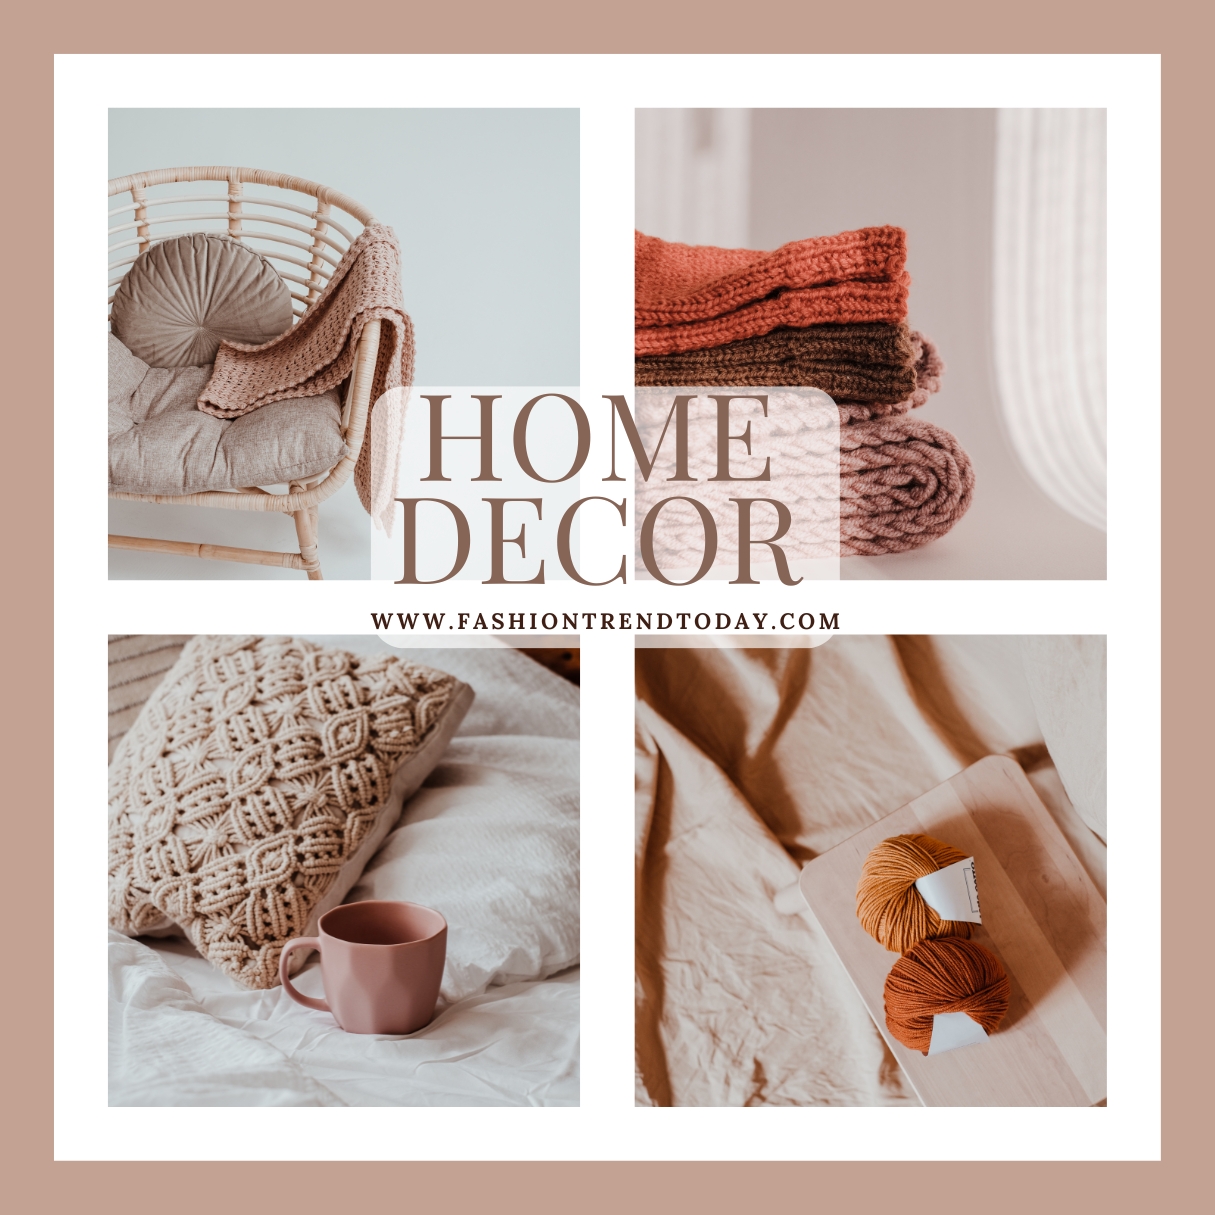 Home Decor: Crafted Elegance Where Memories Blossom